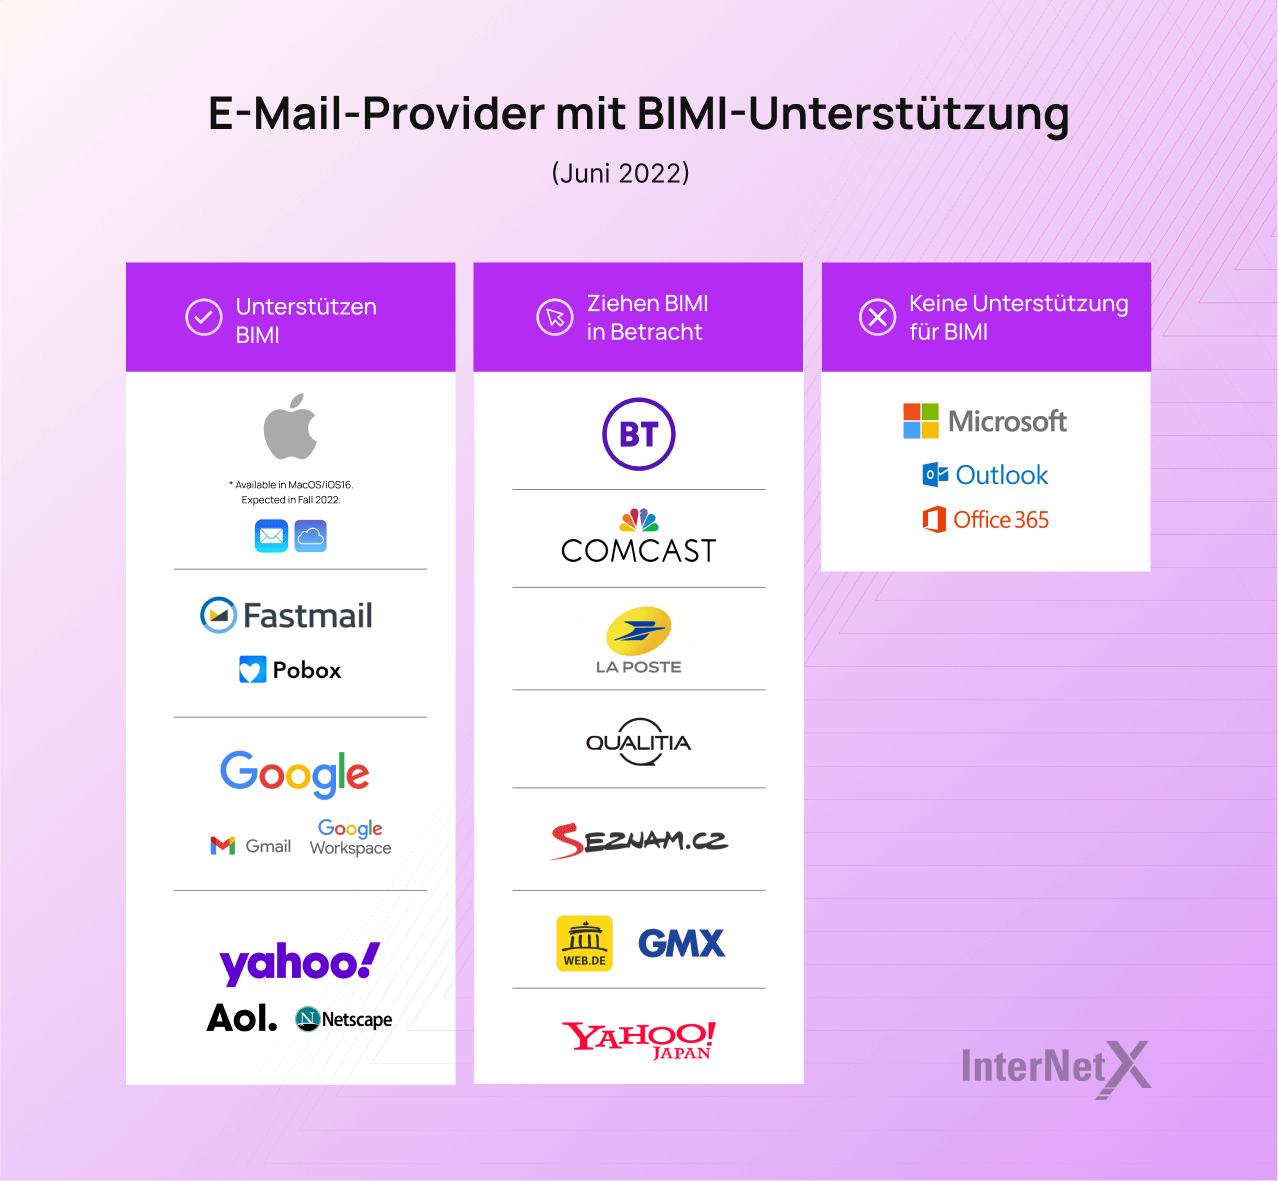 Mehrere E-Mail-Anbieter, darunter Apple, Google, Yahoo! und AOL, unterstützen derzeit BIMI für eine verbesserte E-Mail-Sicherheit und Authentifizierung. Microsoft, Outlook und Office 365 haben jedoch noch keine BIMI-Unterstützung implementiert.